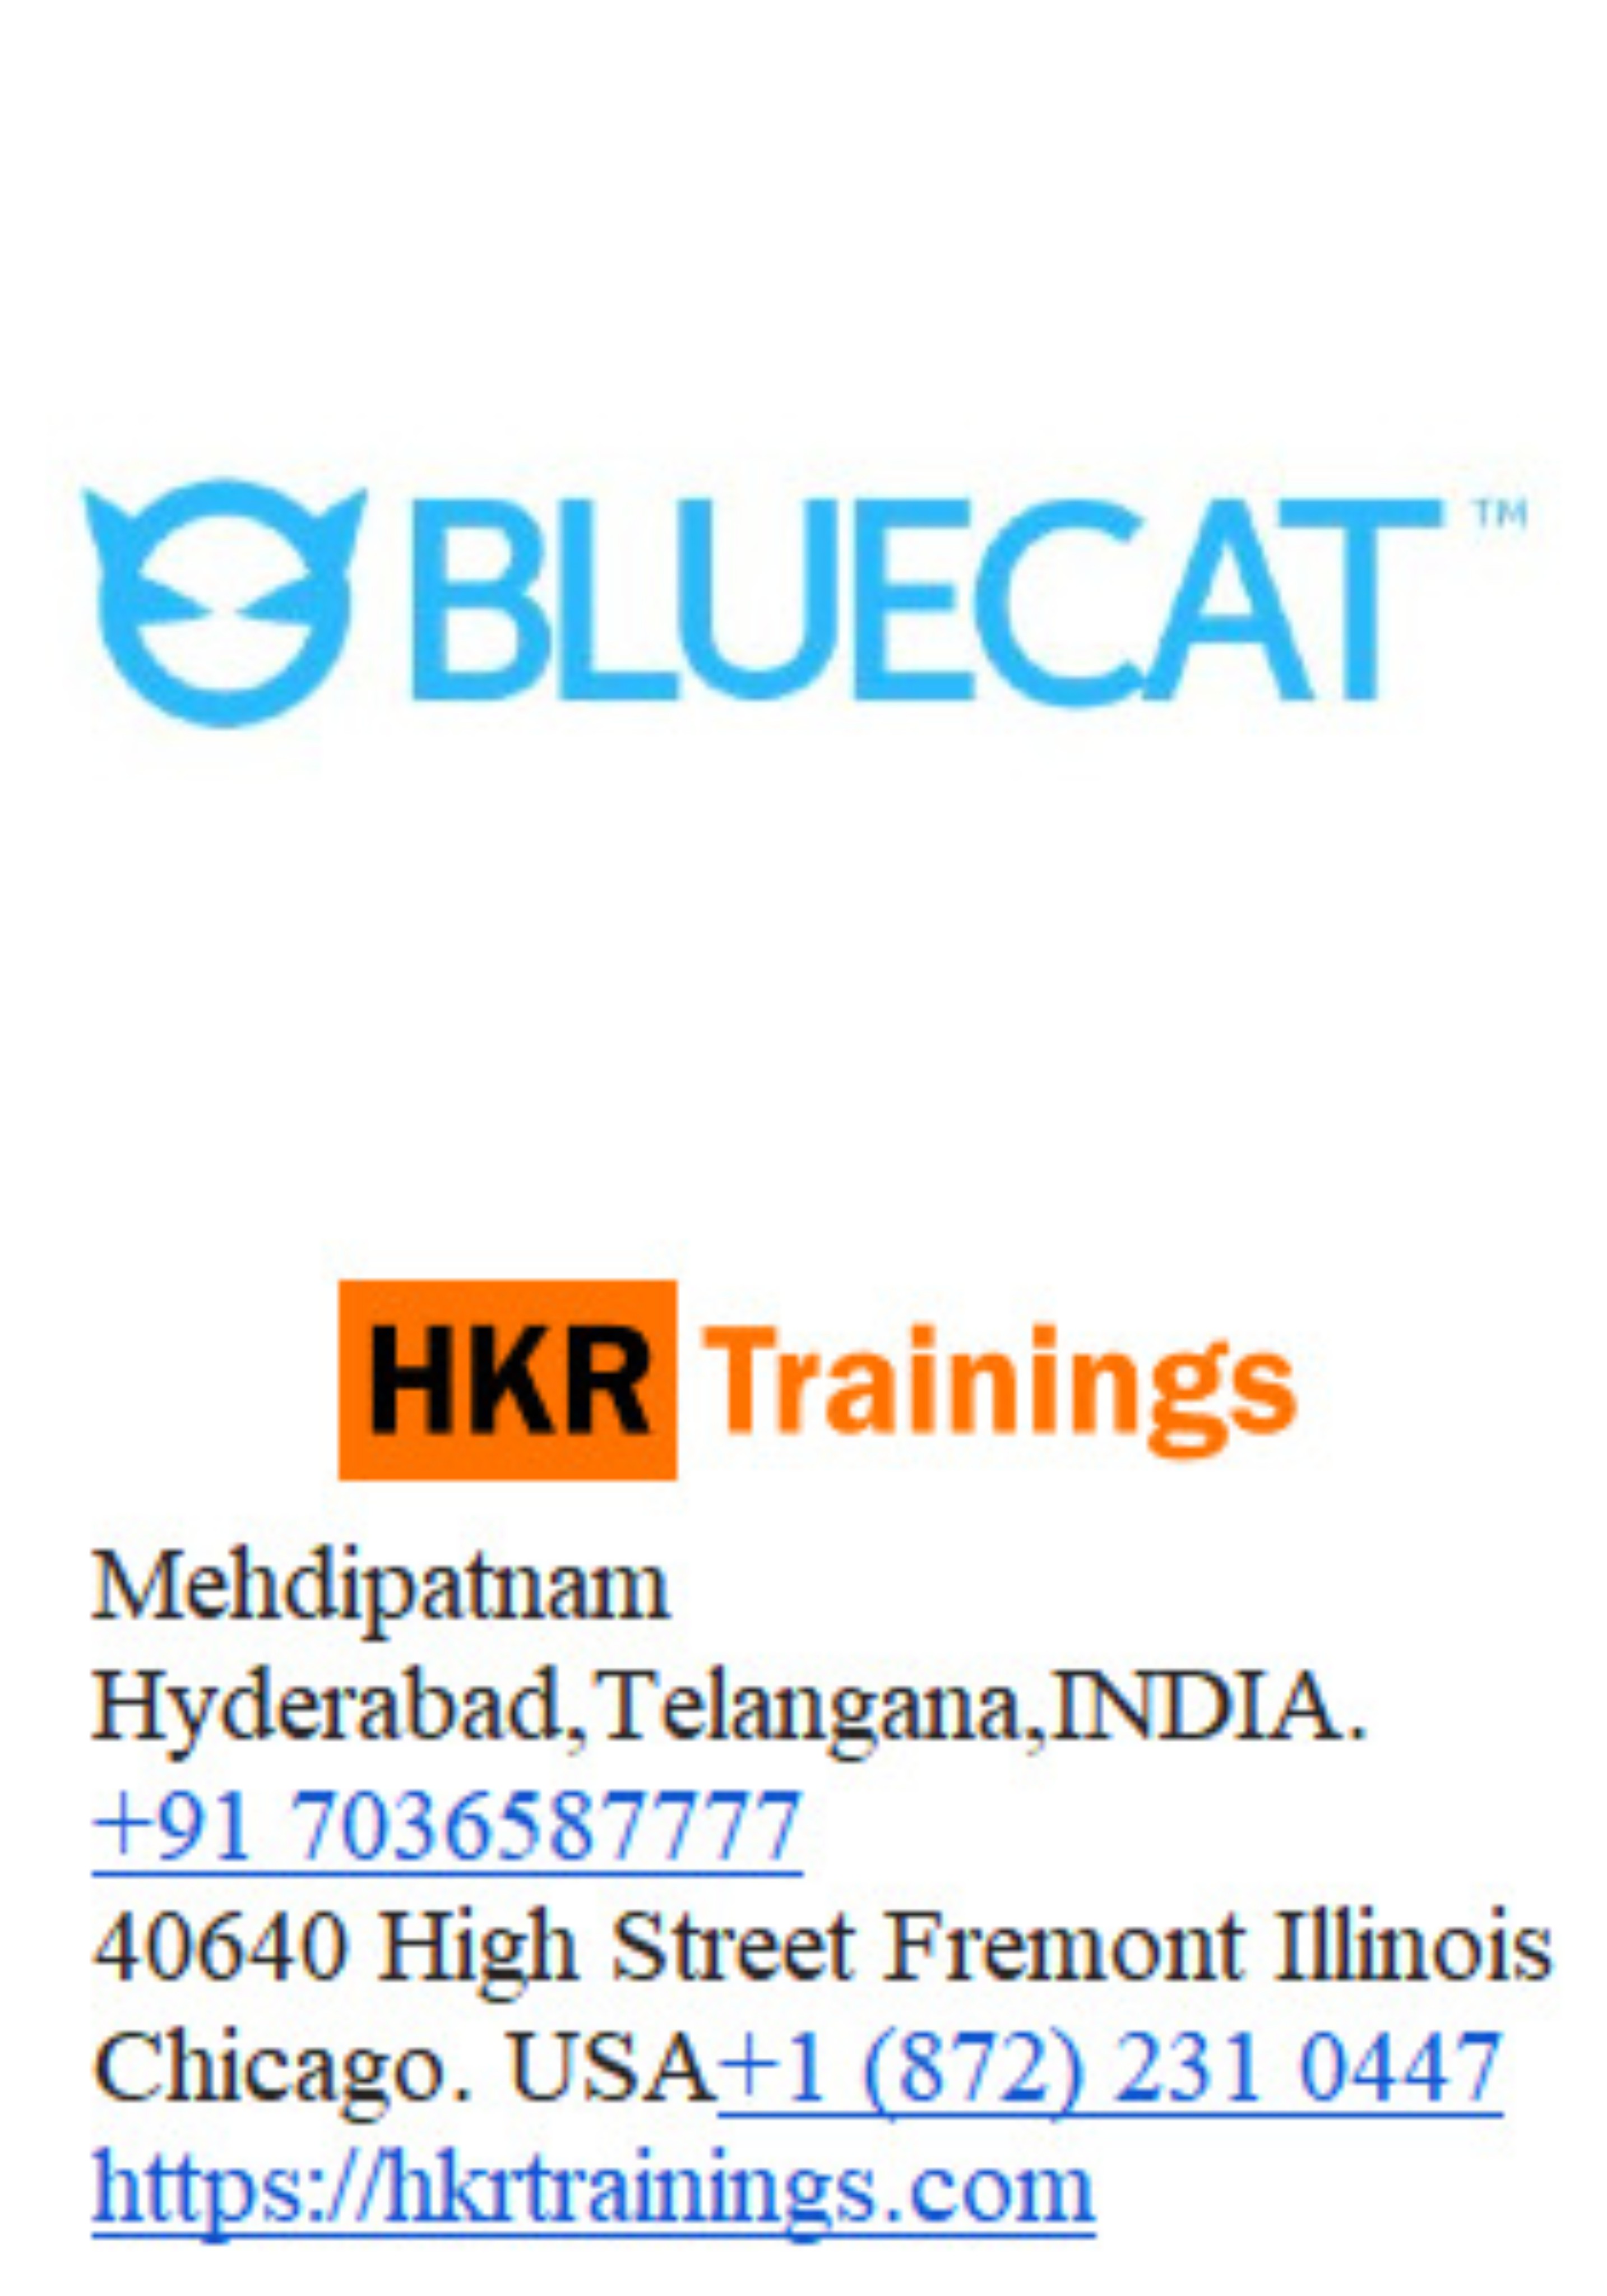 Bluecat Training, Hyderabad, Telangana, India